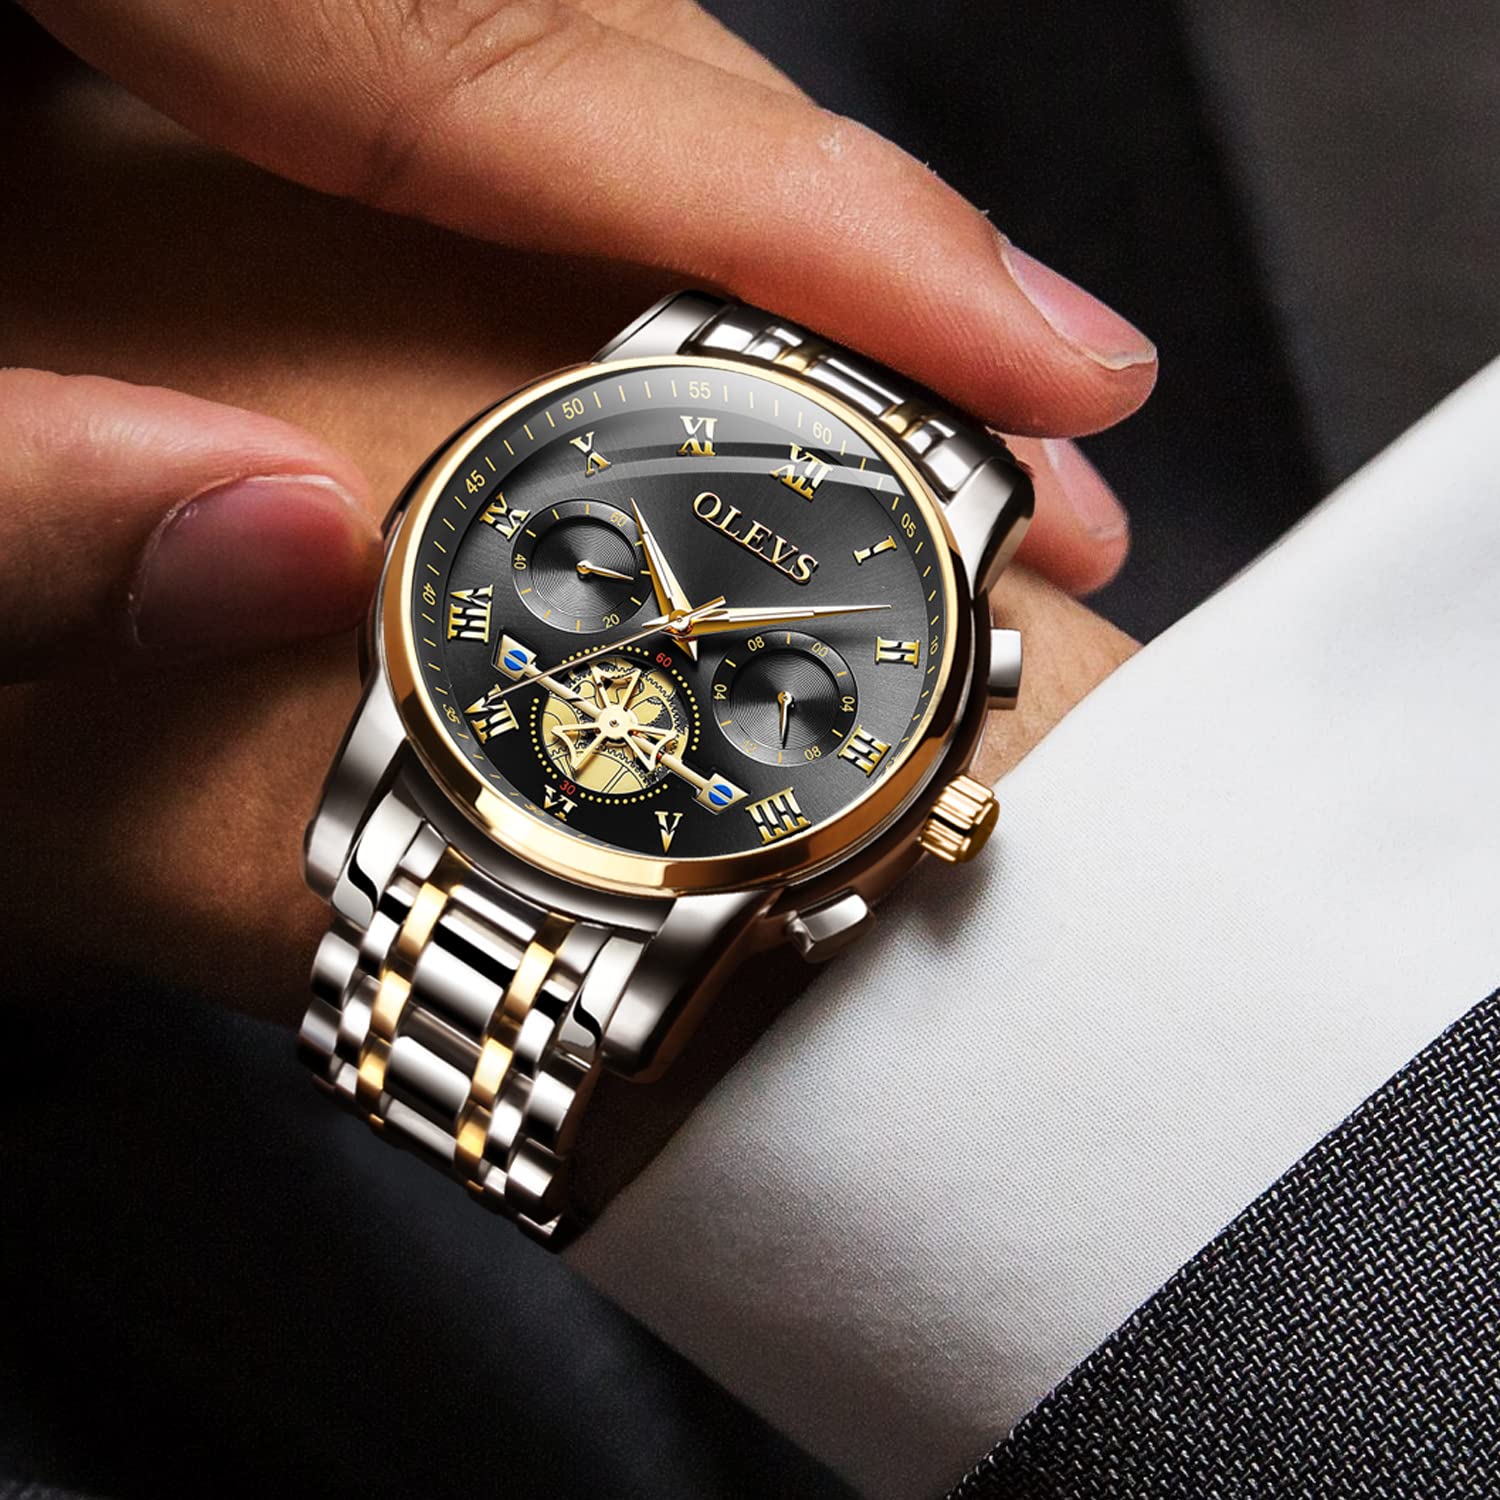 OLEVS Herrenuhren Edelstahlarmband Quarz Uhr Männer mit Diamant Datum Wasserdicht Leuchtende Klassische Elegantes Armbanduhr Geschenk